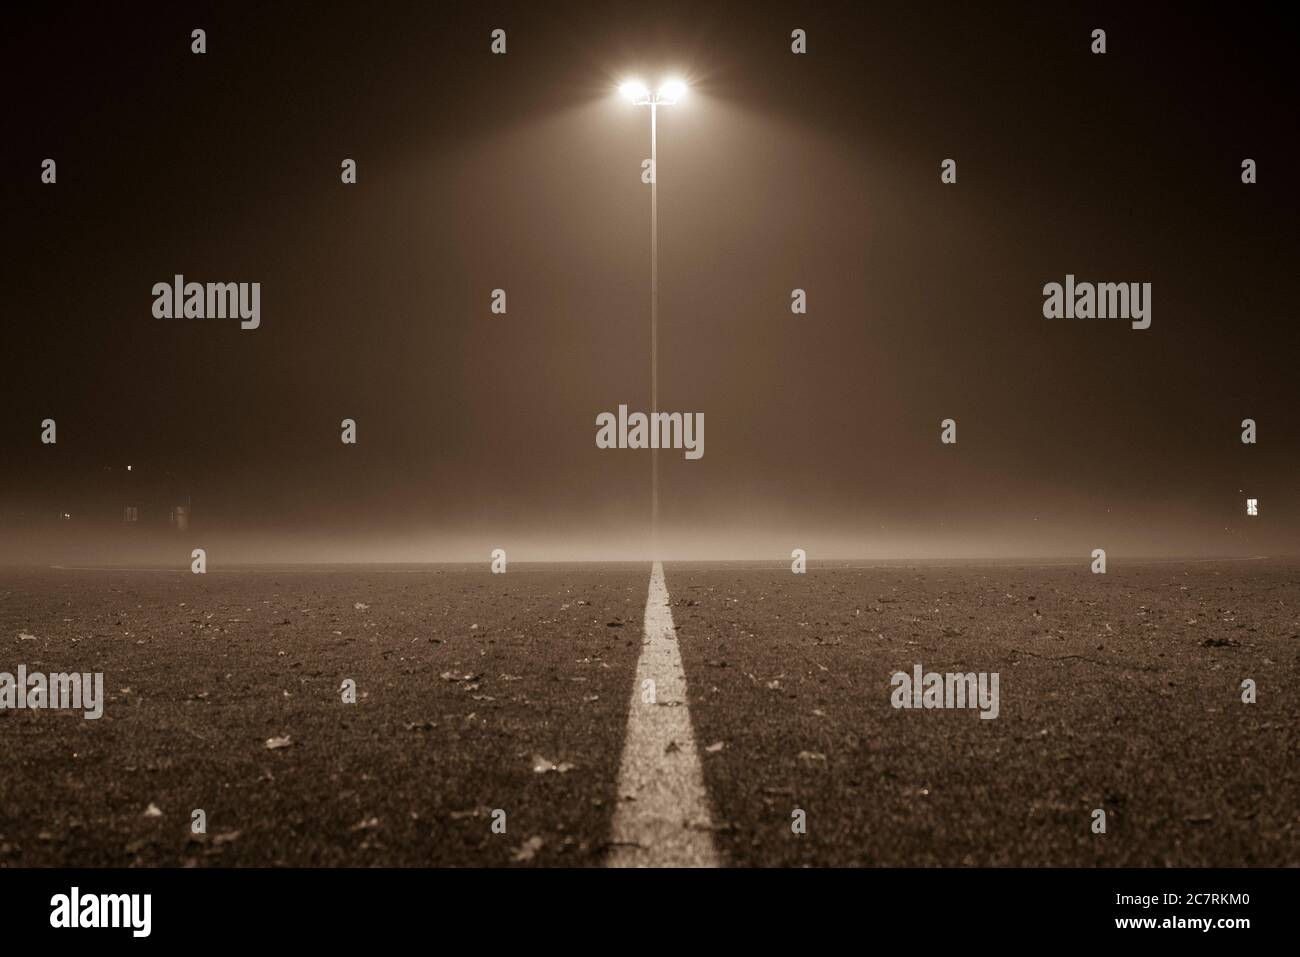 Nebliger Fußballplatz, Fußball, Fußballplatz bei Nacht mit Nebel, Laterne und Nebel, schwarz-weiß Foto Stockfoto